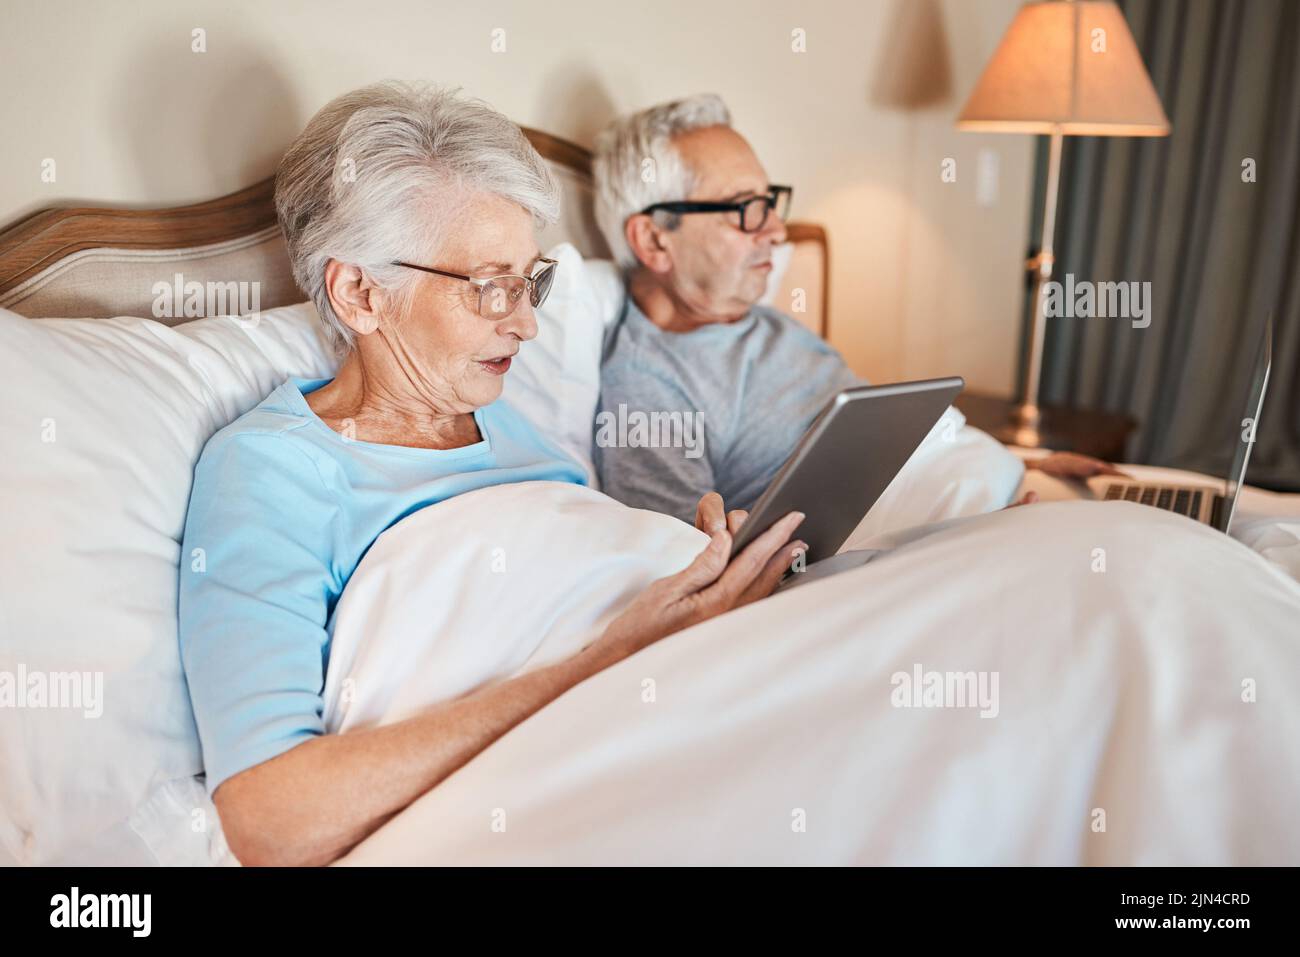 Avete visto le notizie stamattina. Una coppia anziana seduta a letto insieme e utilizzando la tecnologia in una casa di cura. Foto Stock